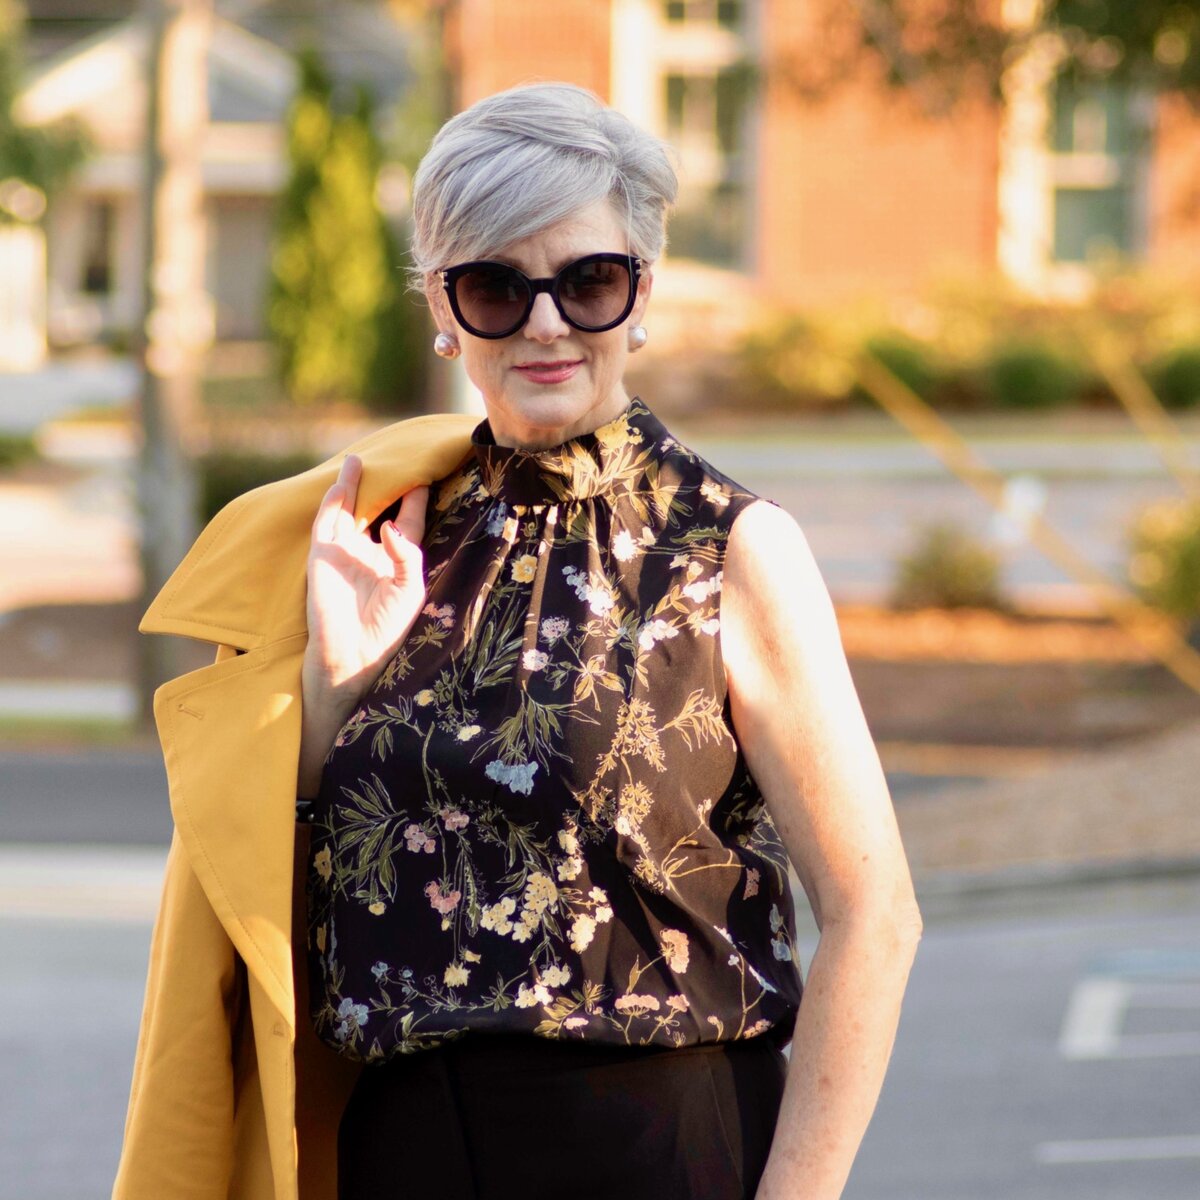 Что носить осенью 2019 женщине старше 45 лет, чтобы выглядеть модно и свежо